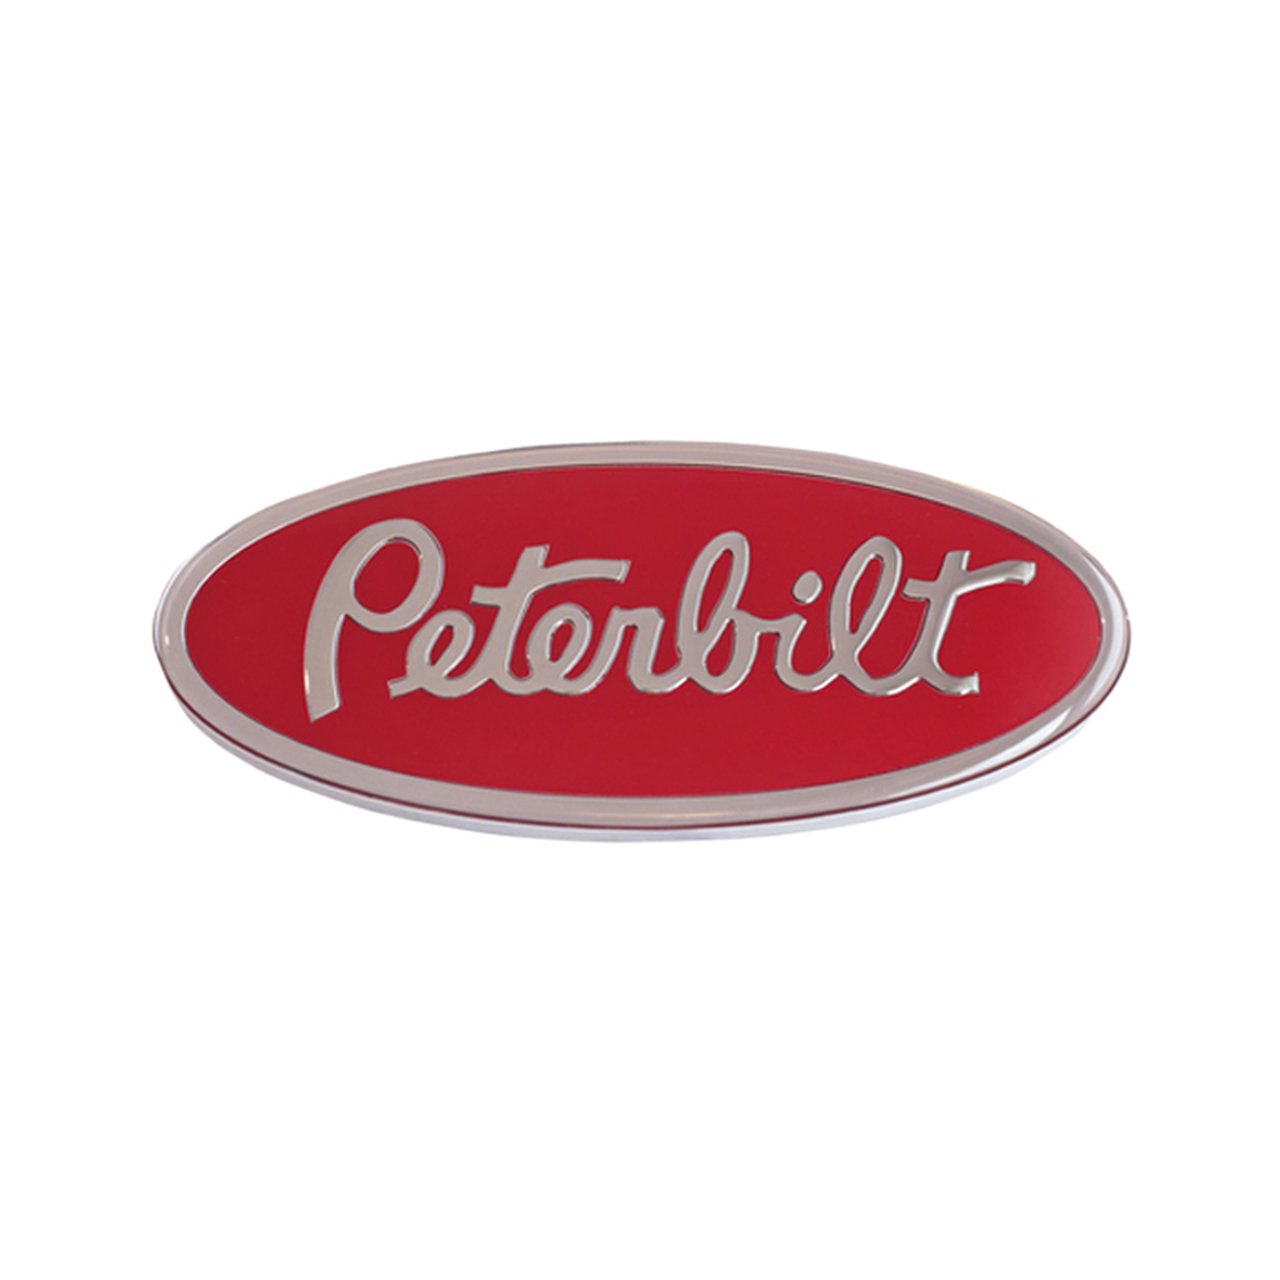 Peterbilt Oval Hood Emblem's Truck Parts